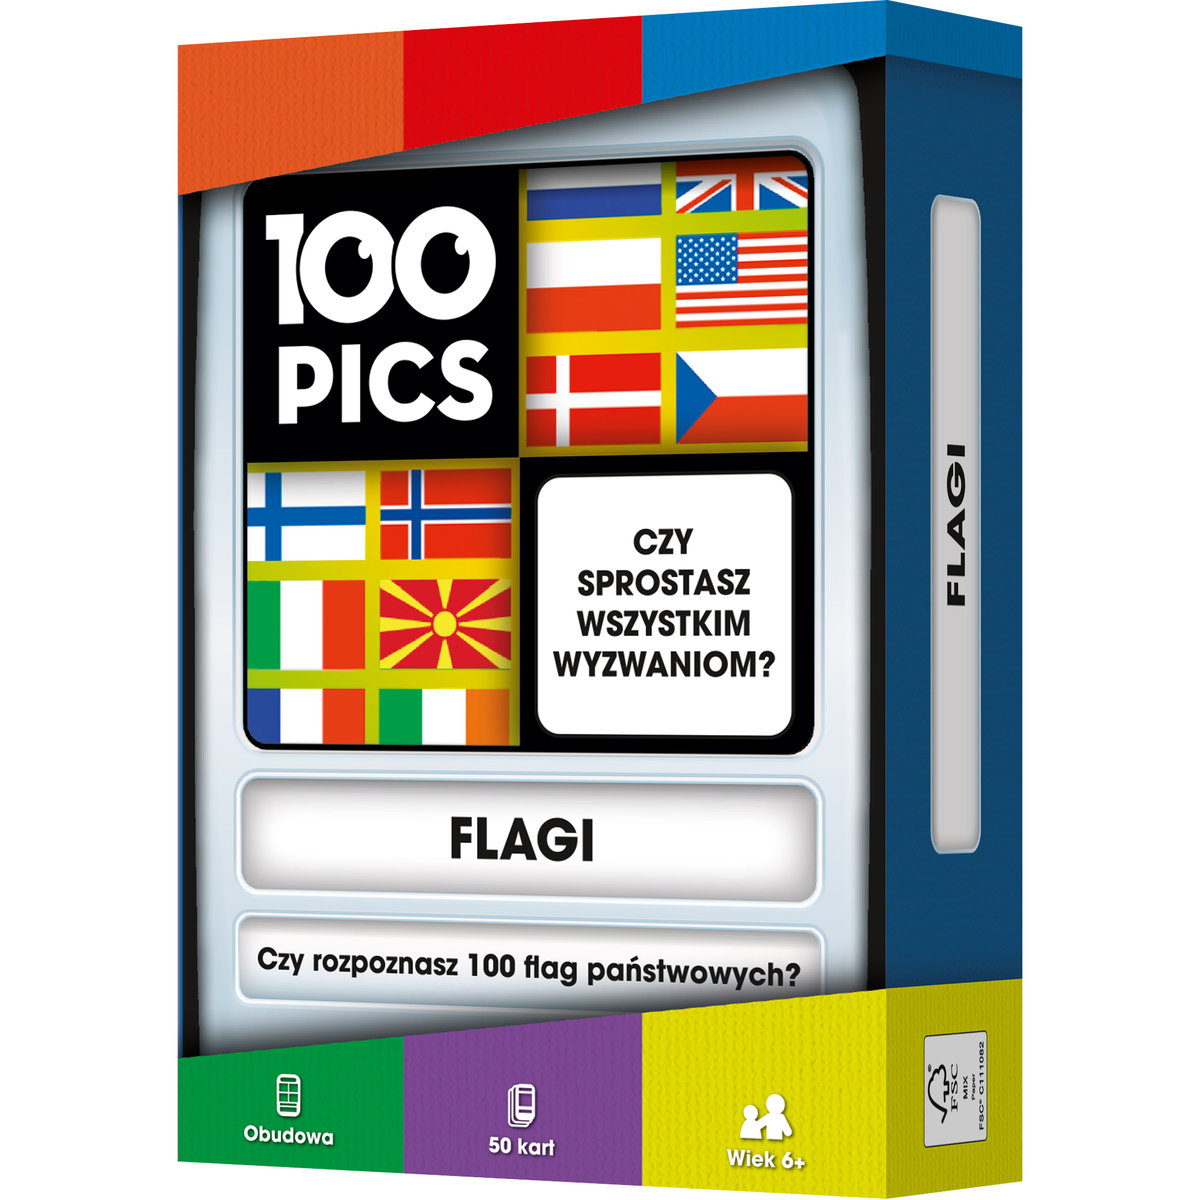 100 Pics: Flagi gra edukacyjna Rebel